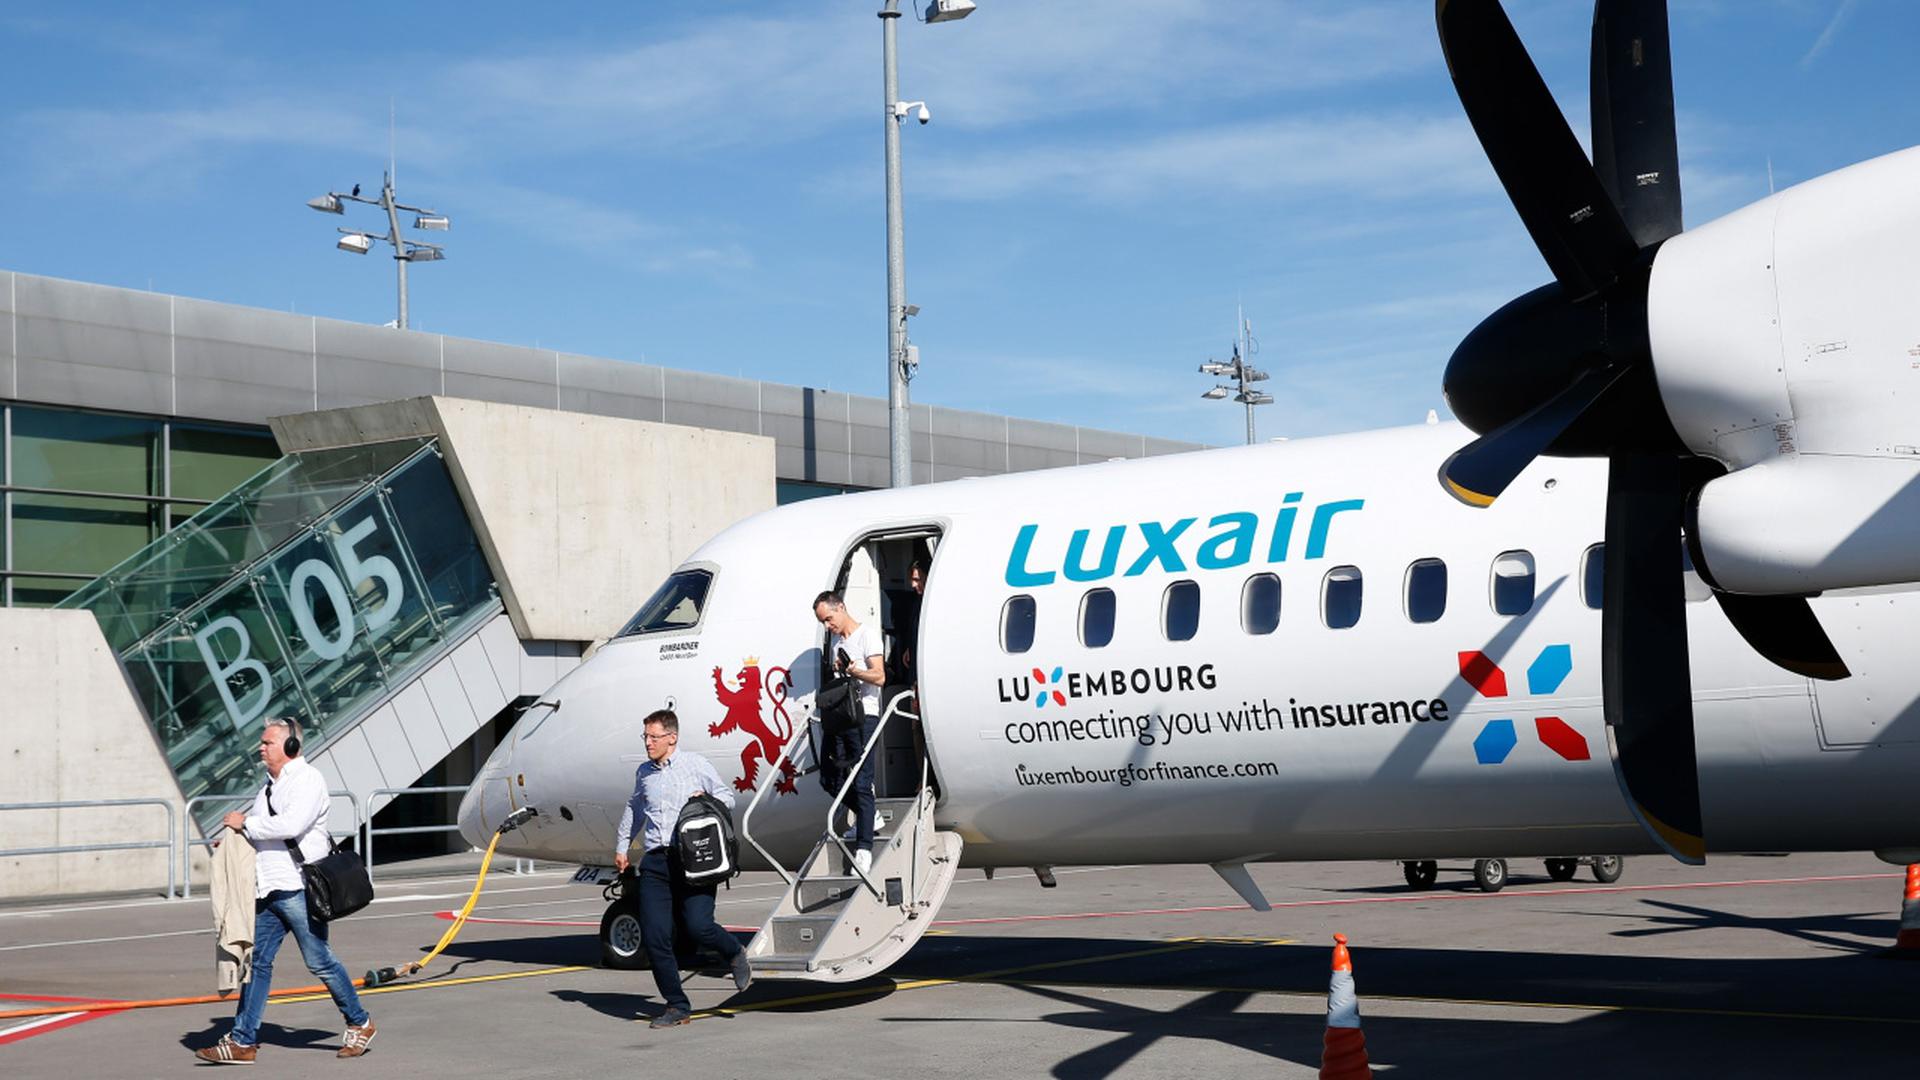 A portuguesa e o marido tiveram um voo da Luxair cancelado no Porto e outro adiado em Lisboa.